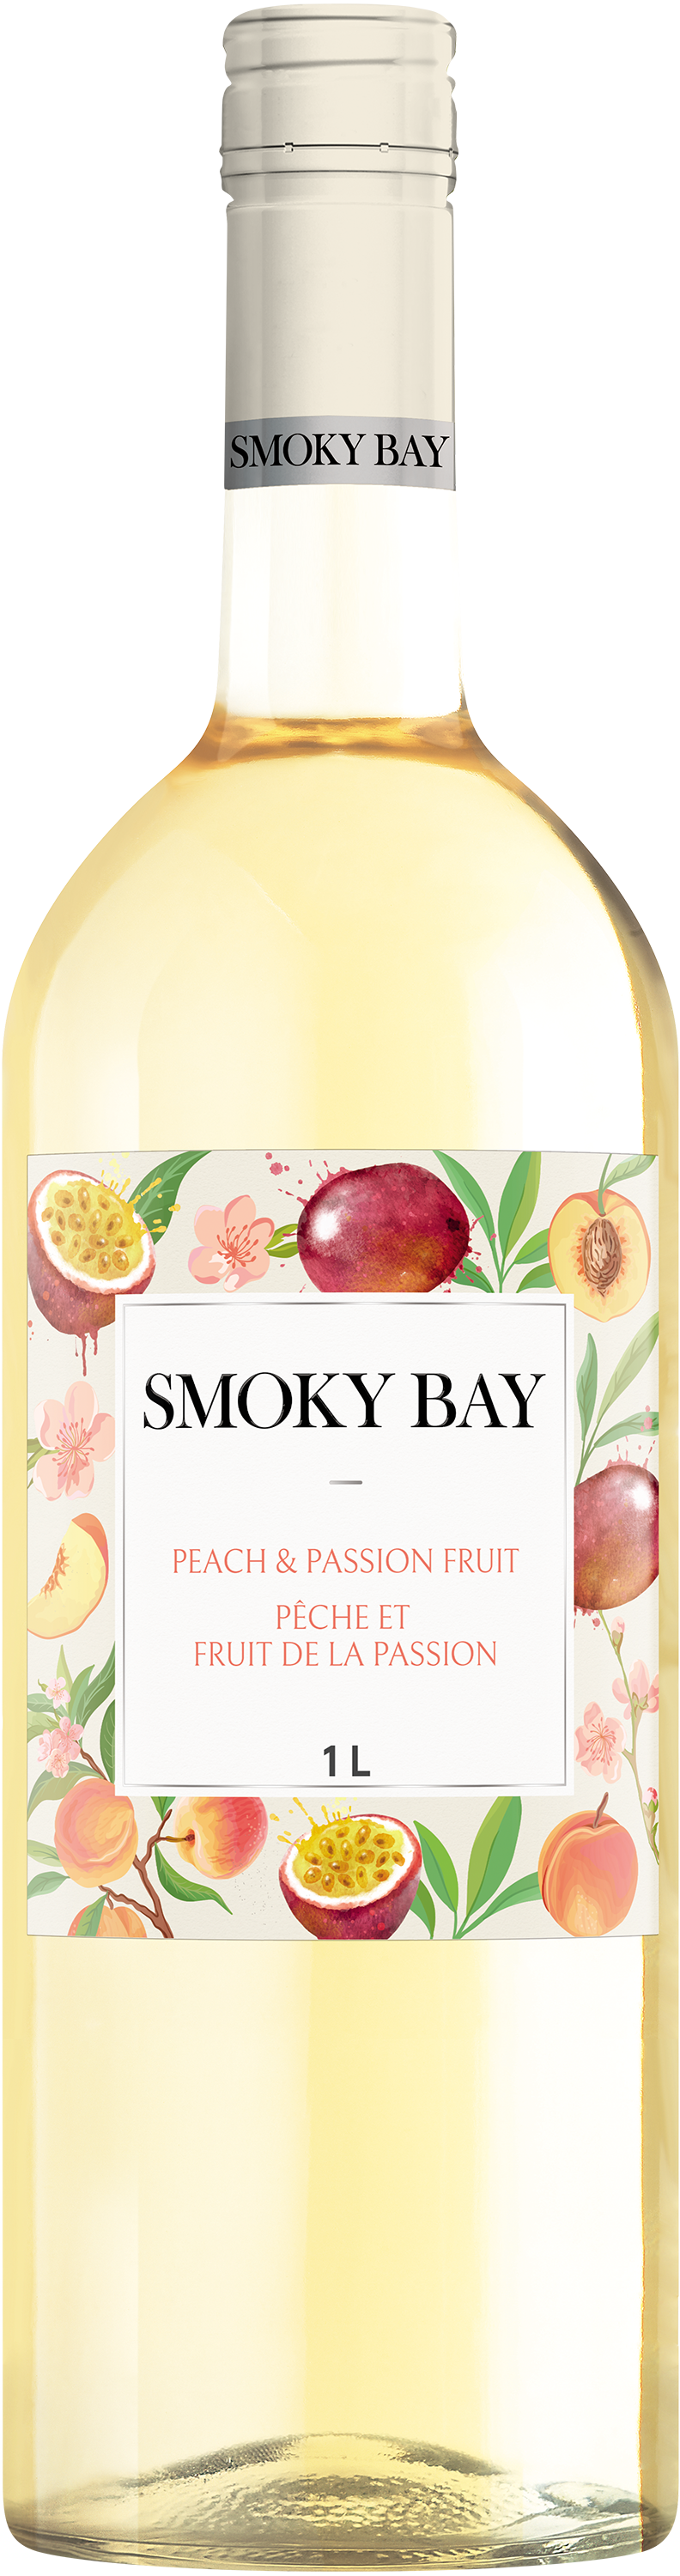 Smoky Bay Pêche et Fruit de la passion